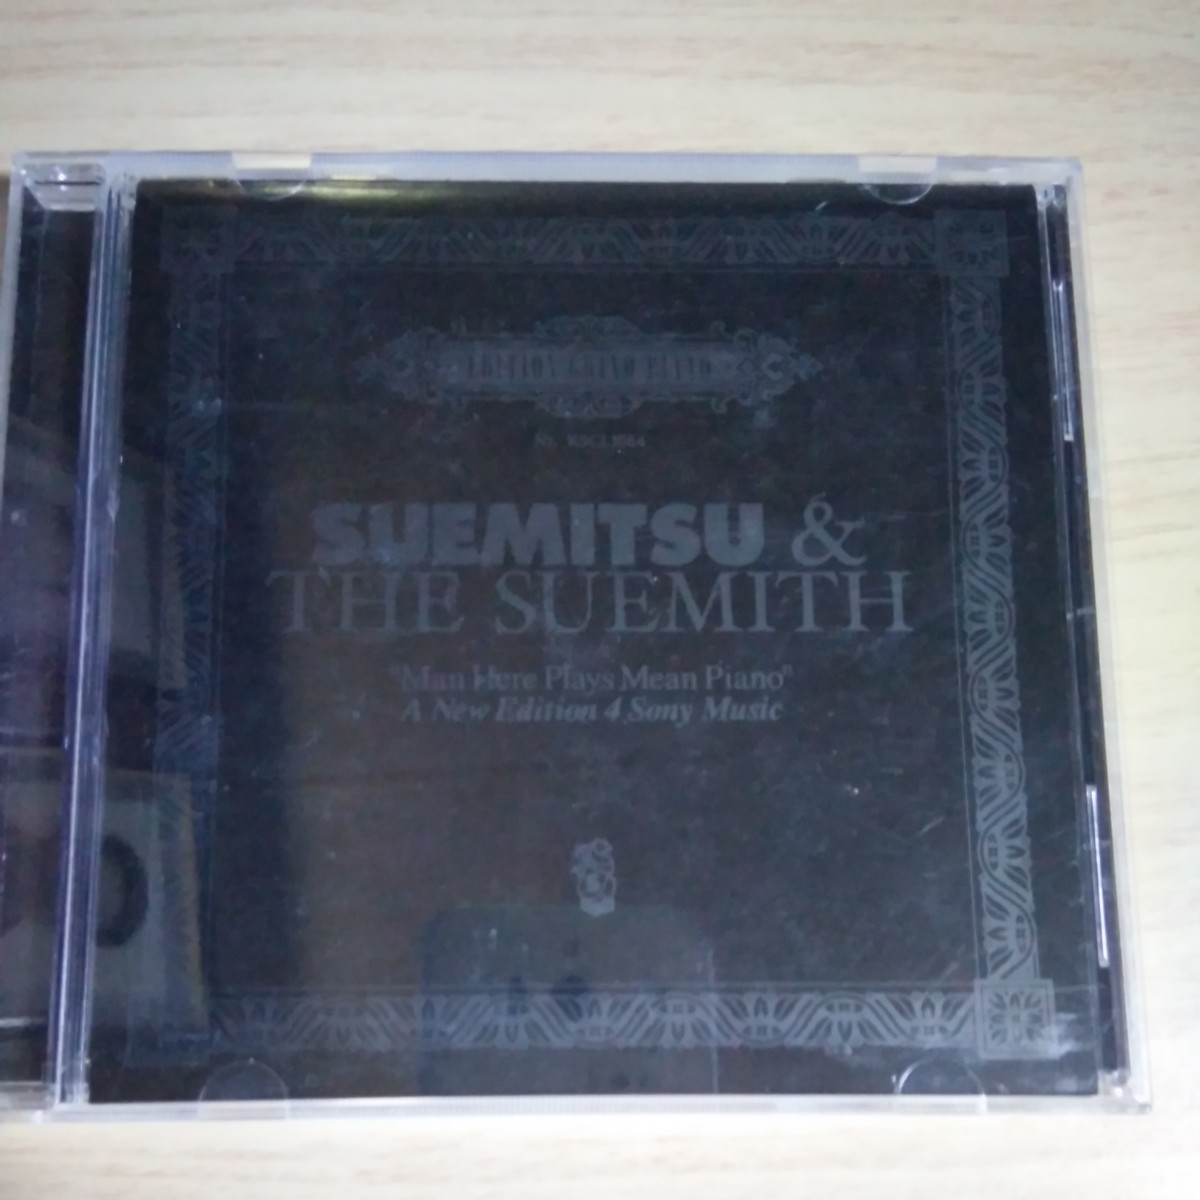 TT081　CD　SUEMITSU ＆ THE SUEMITH　１．”SUEMITSU” Here Plays Mean Piano　２．Irony_画像3